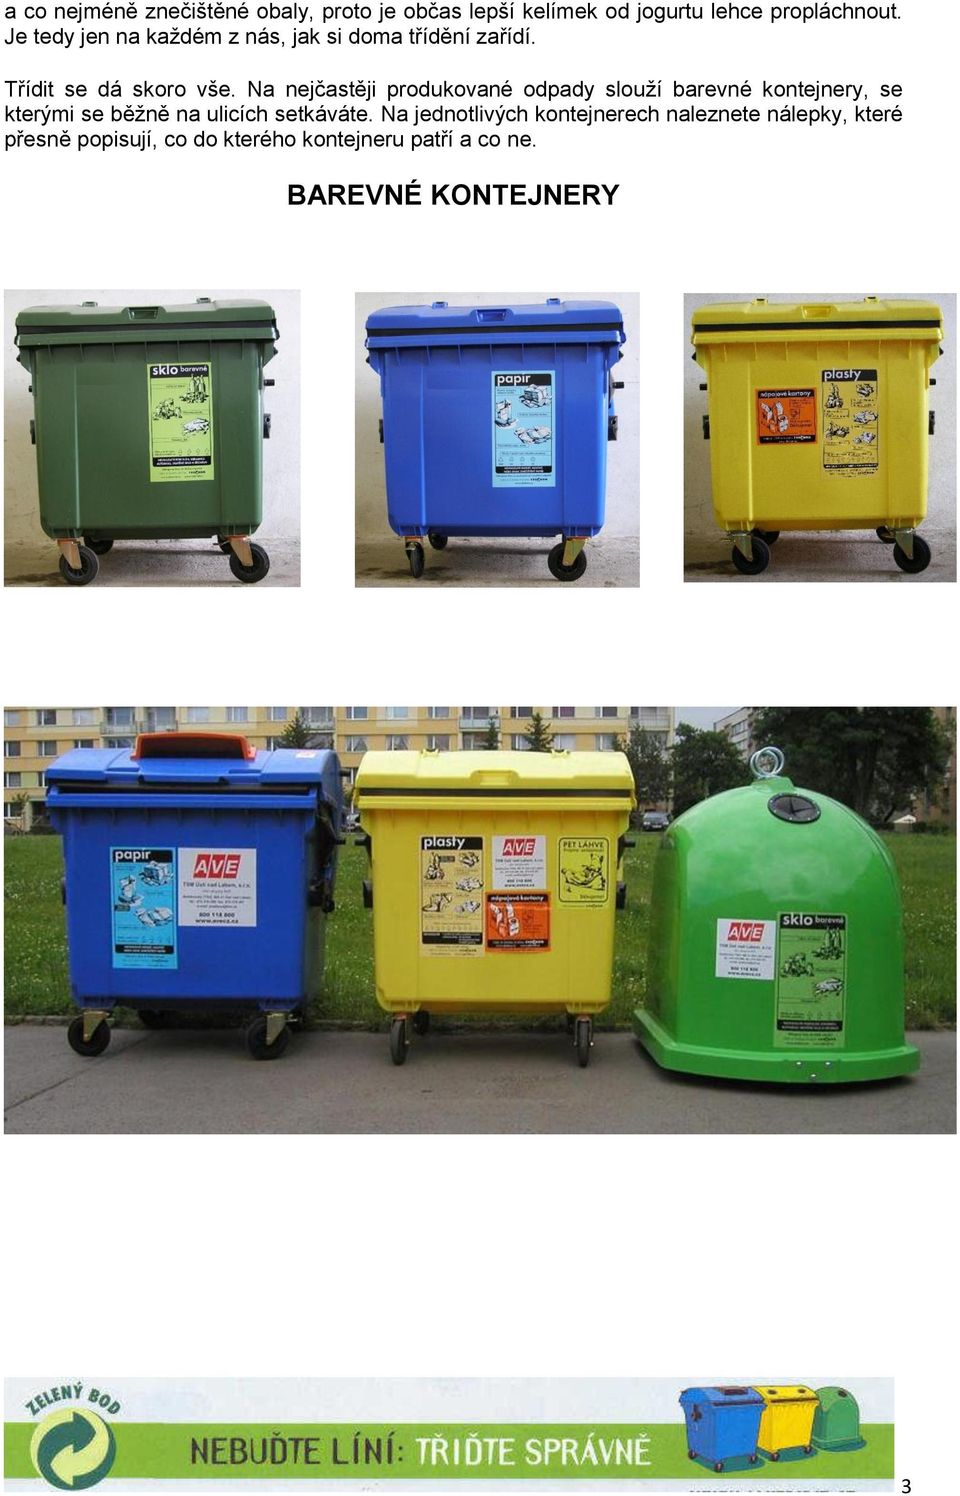 Na nejčastěji produkované odpady slouží barevné kontejnery, se kterými se běžně na ulicích setkáváte.